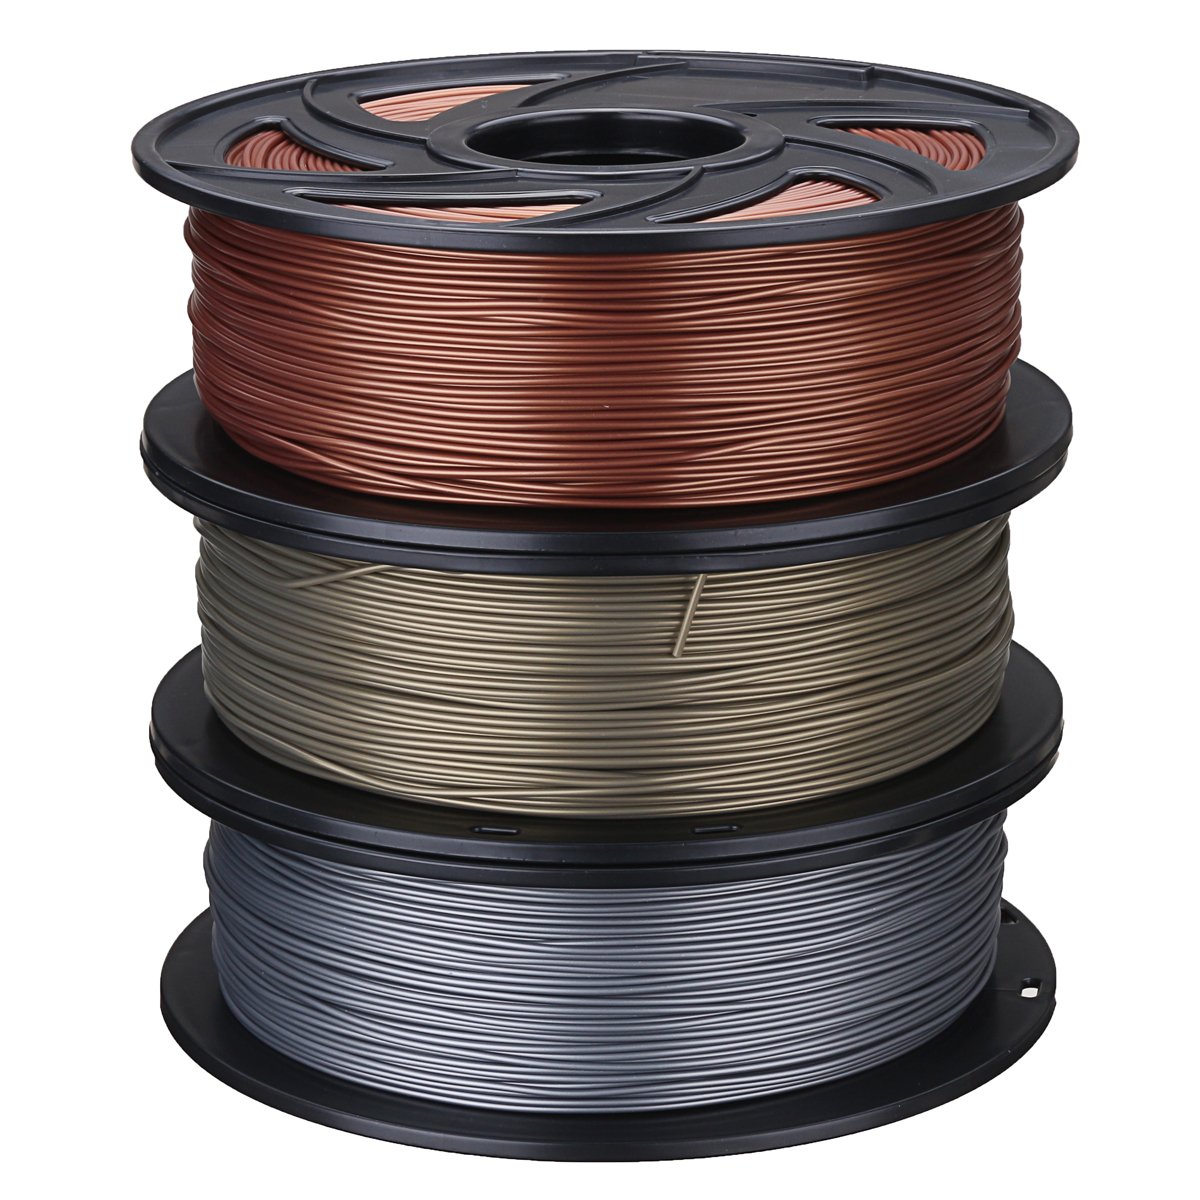 Aluminum/Bronze/Copper 1.75mm 1kg PLA Filament For 3D Printer RepRap 2